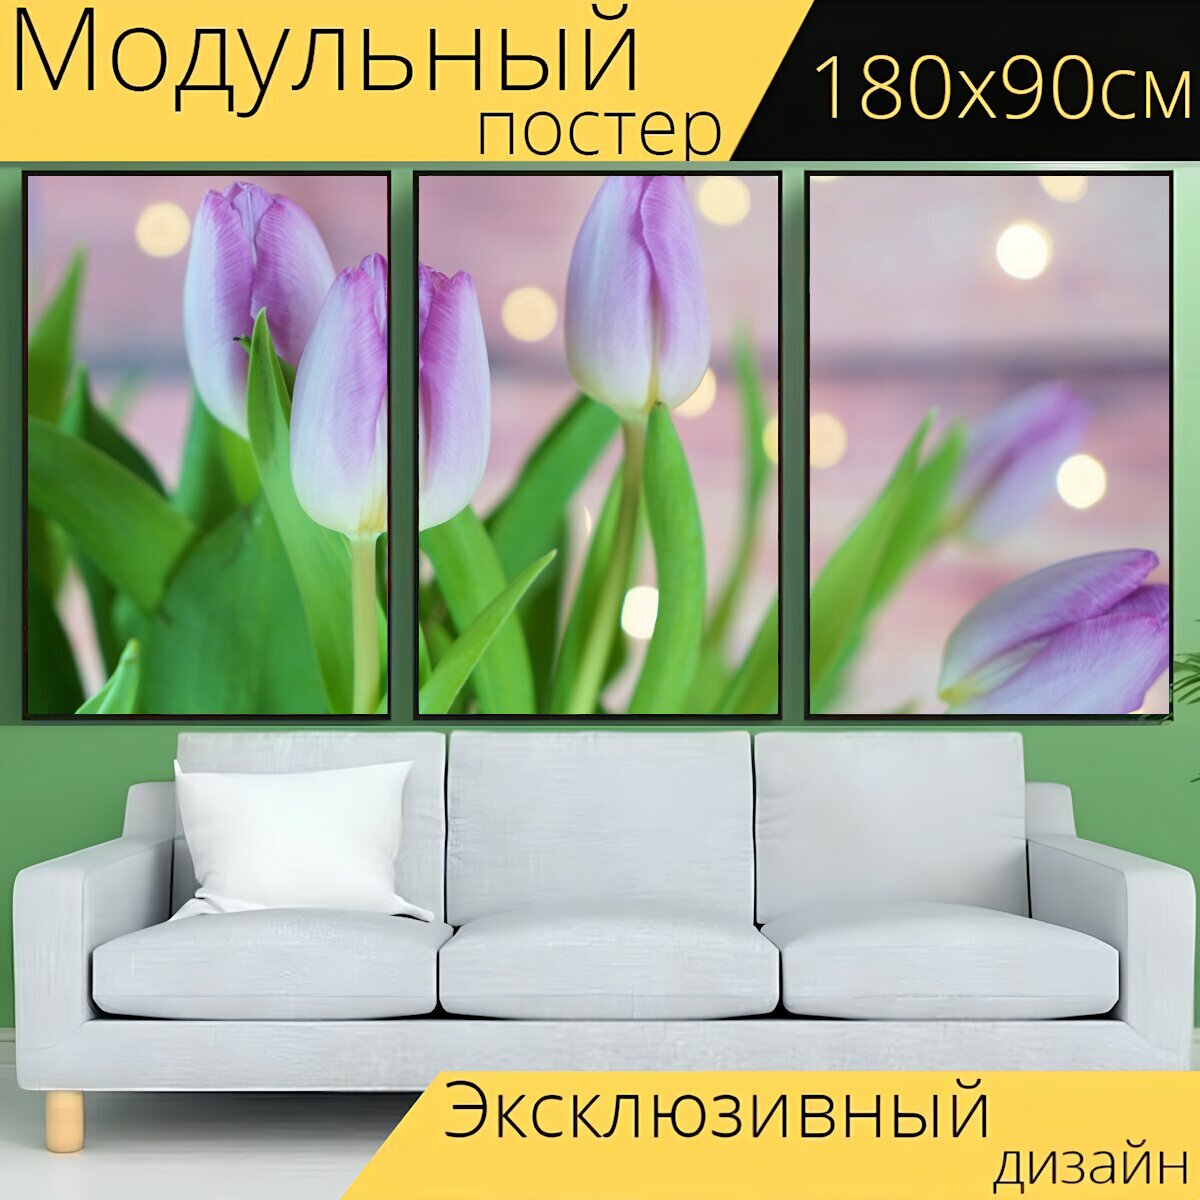 Модульный постер "Тюльпаны, бутоны, цветы" 180 x 90 см. для интерьера